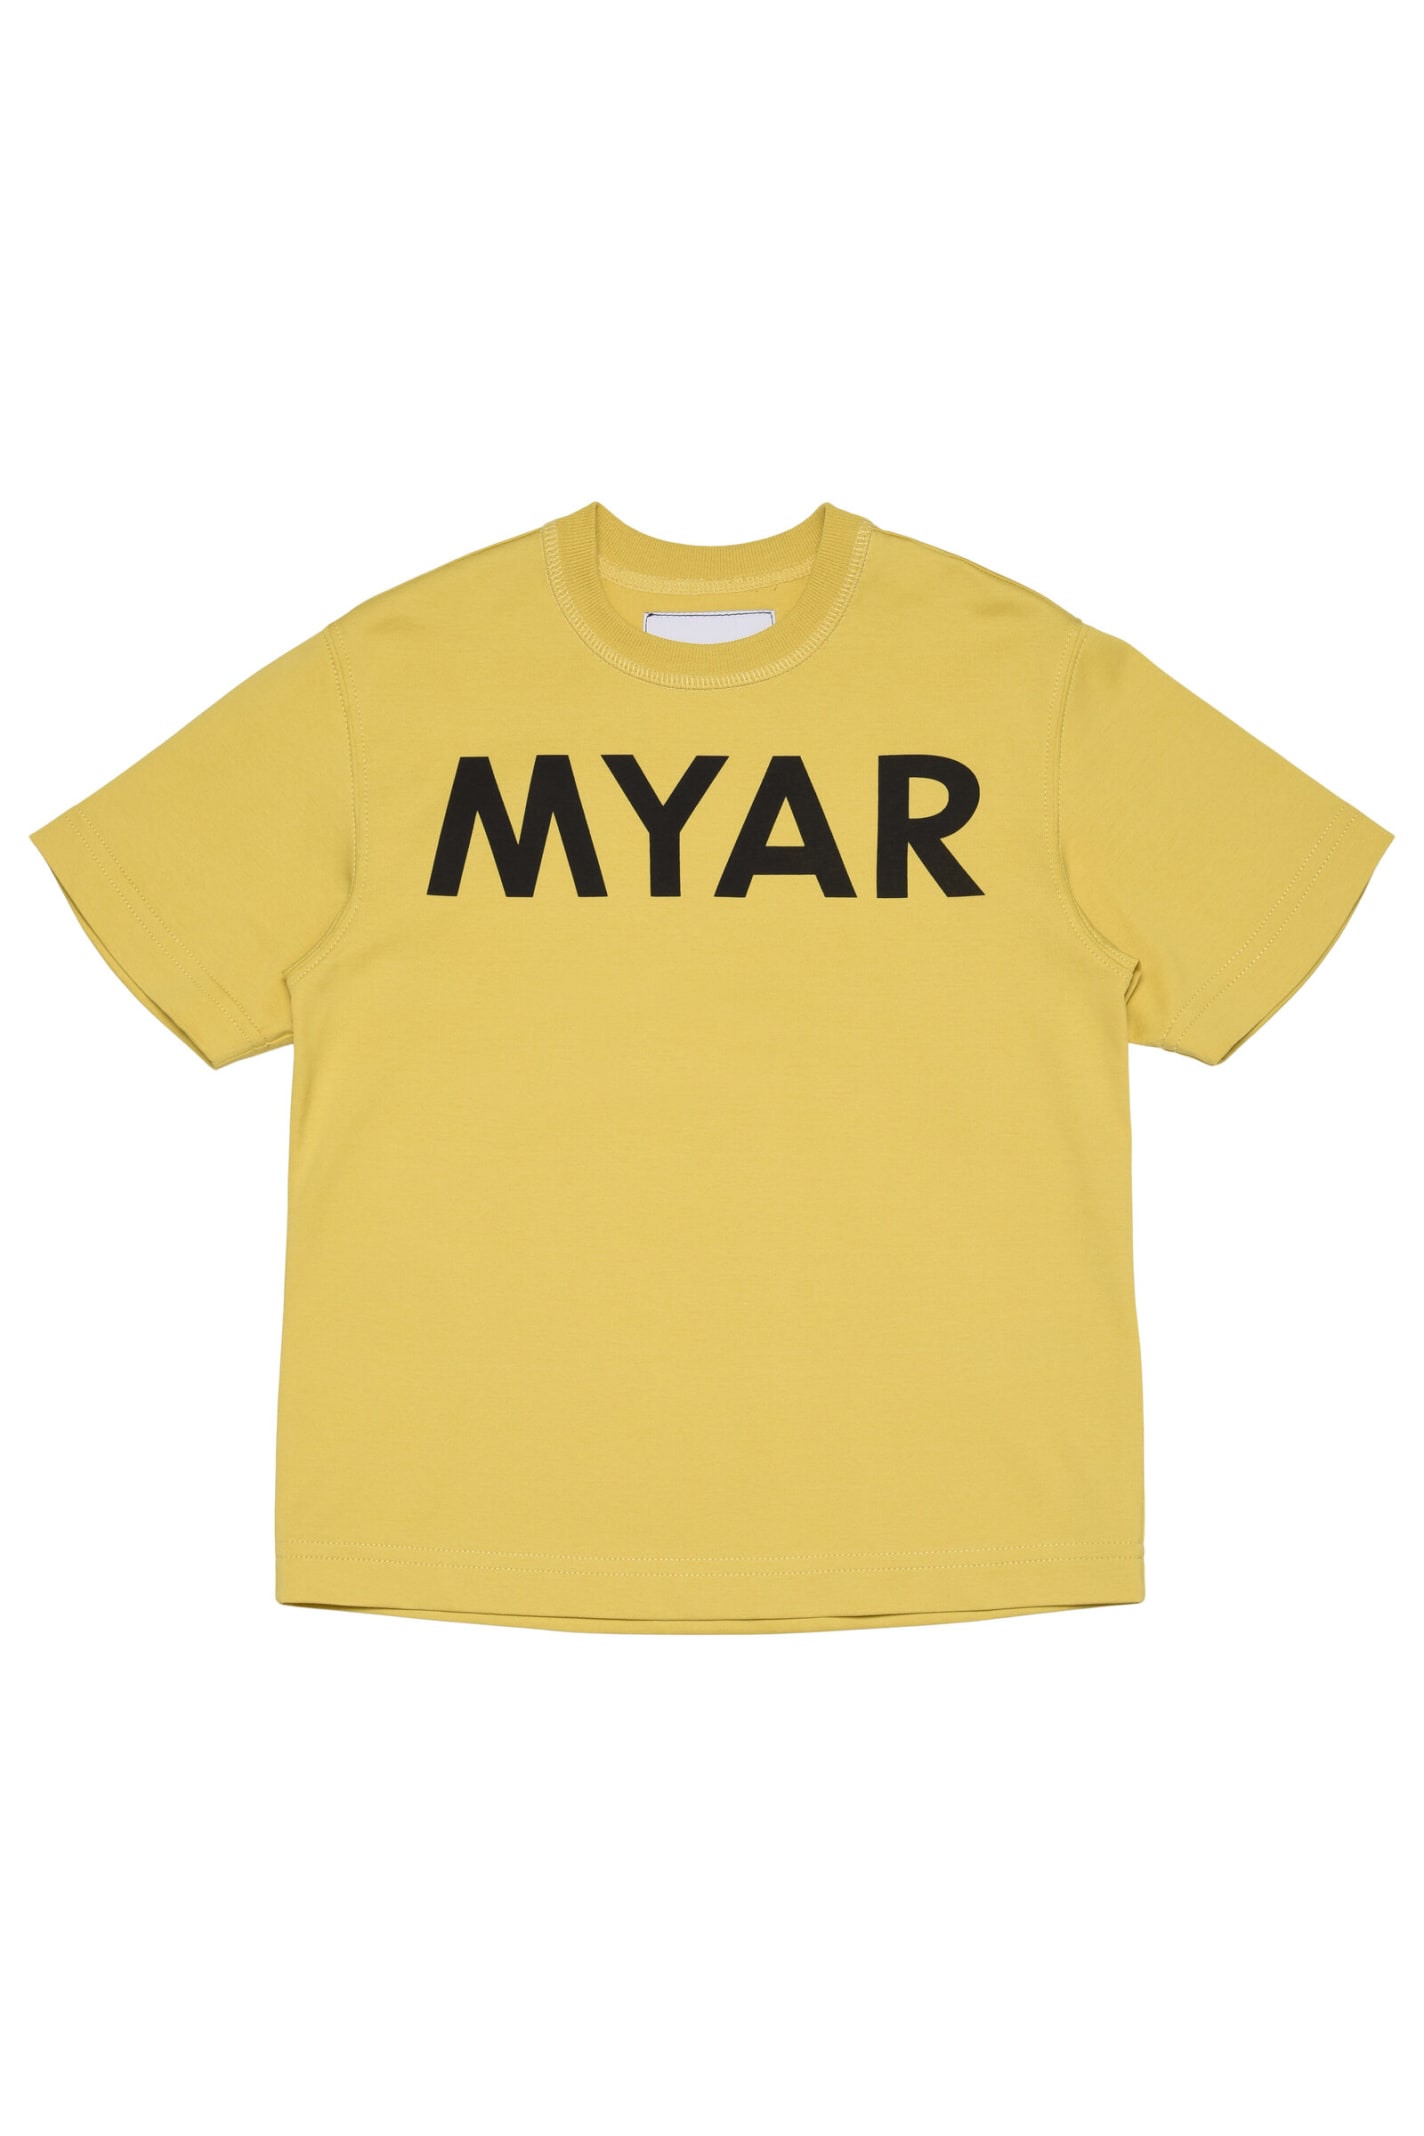 Myt2u T-shirt Myar